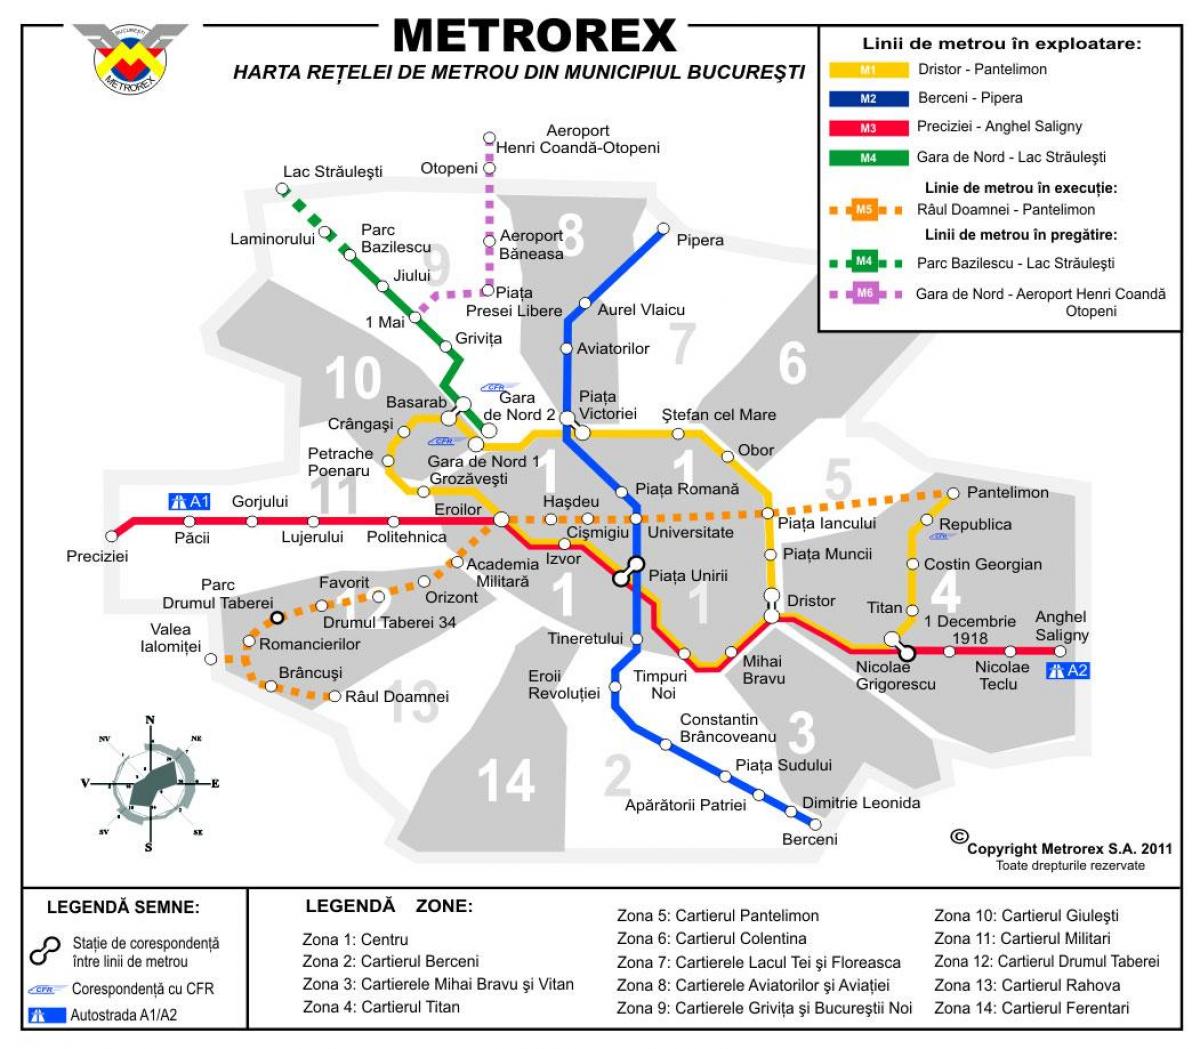 Kort over metrorex 